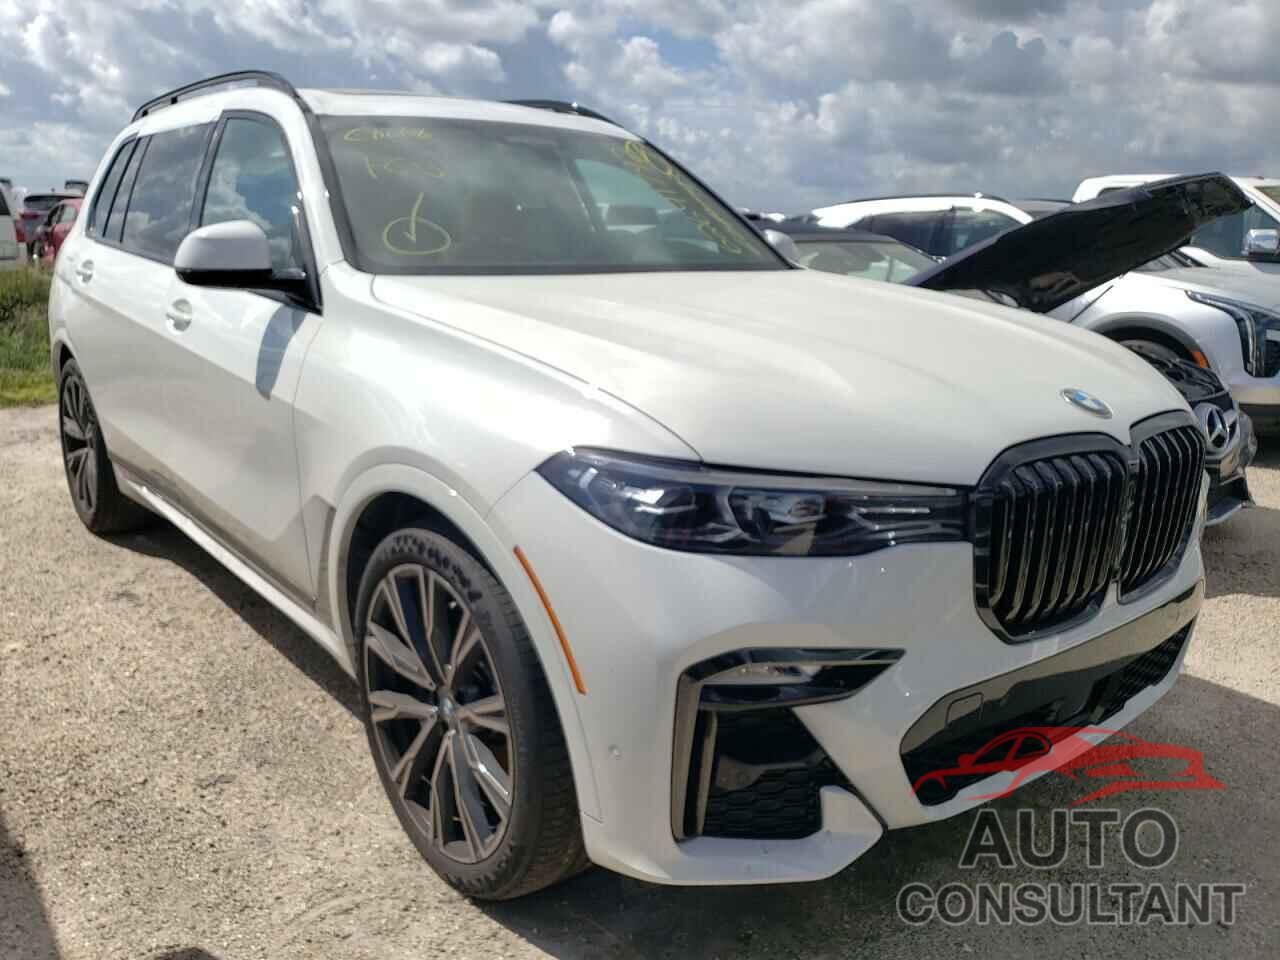 BMW X7 2021 - 5UXCW2C02M9E43451